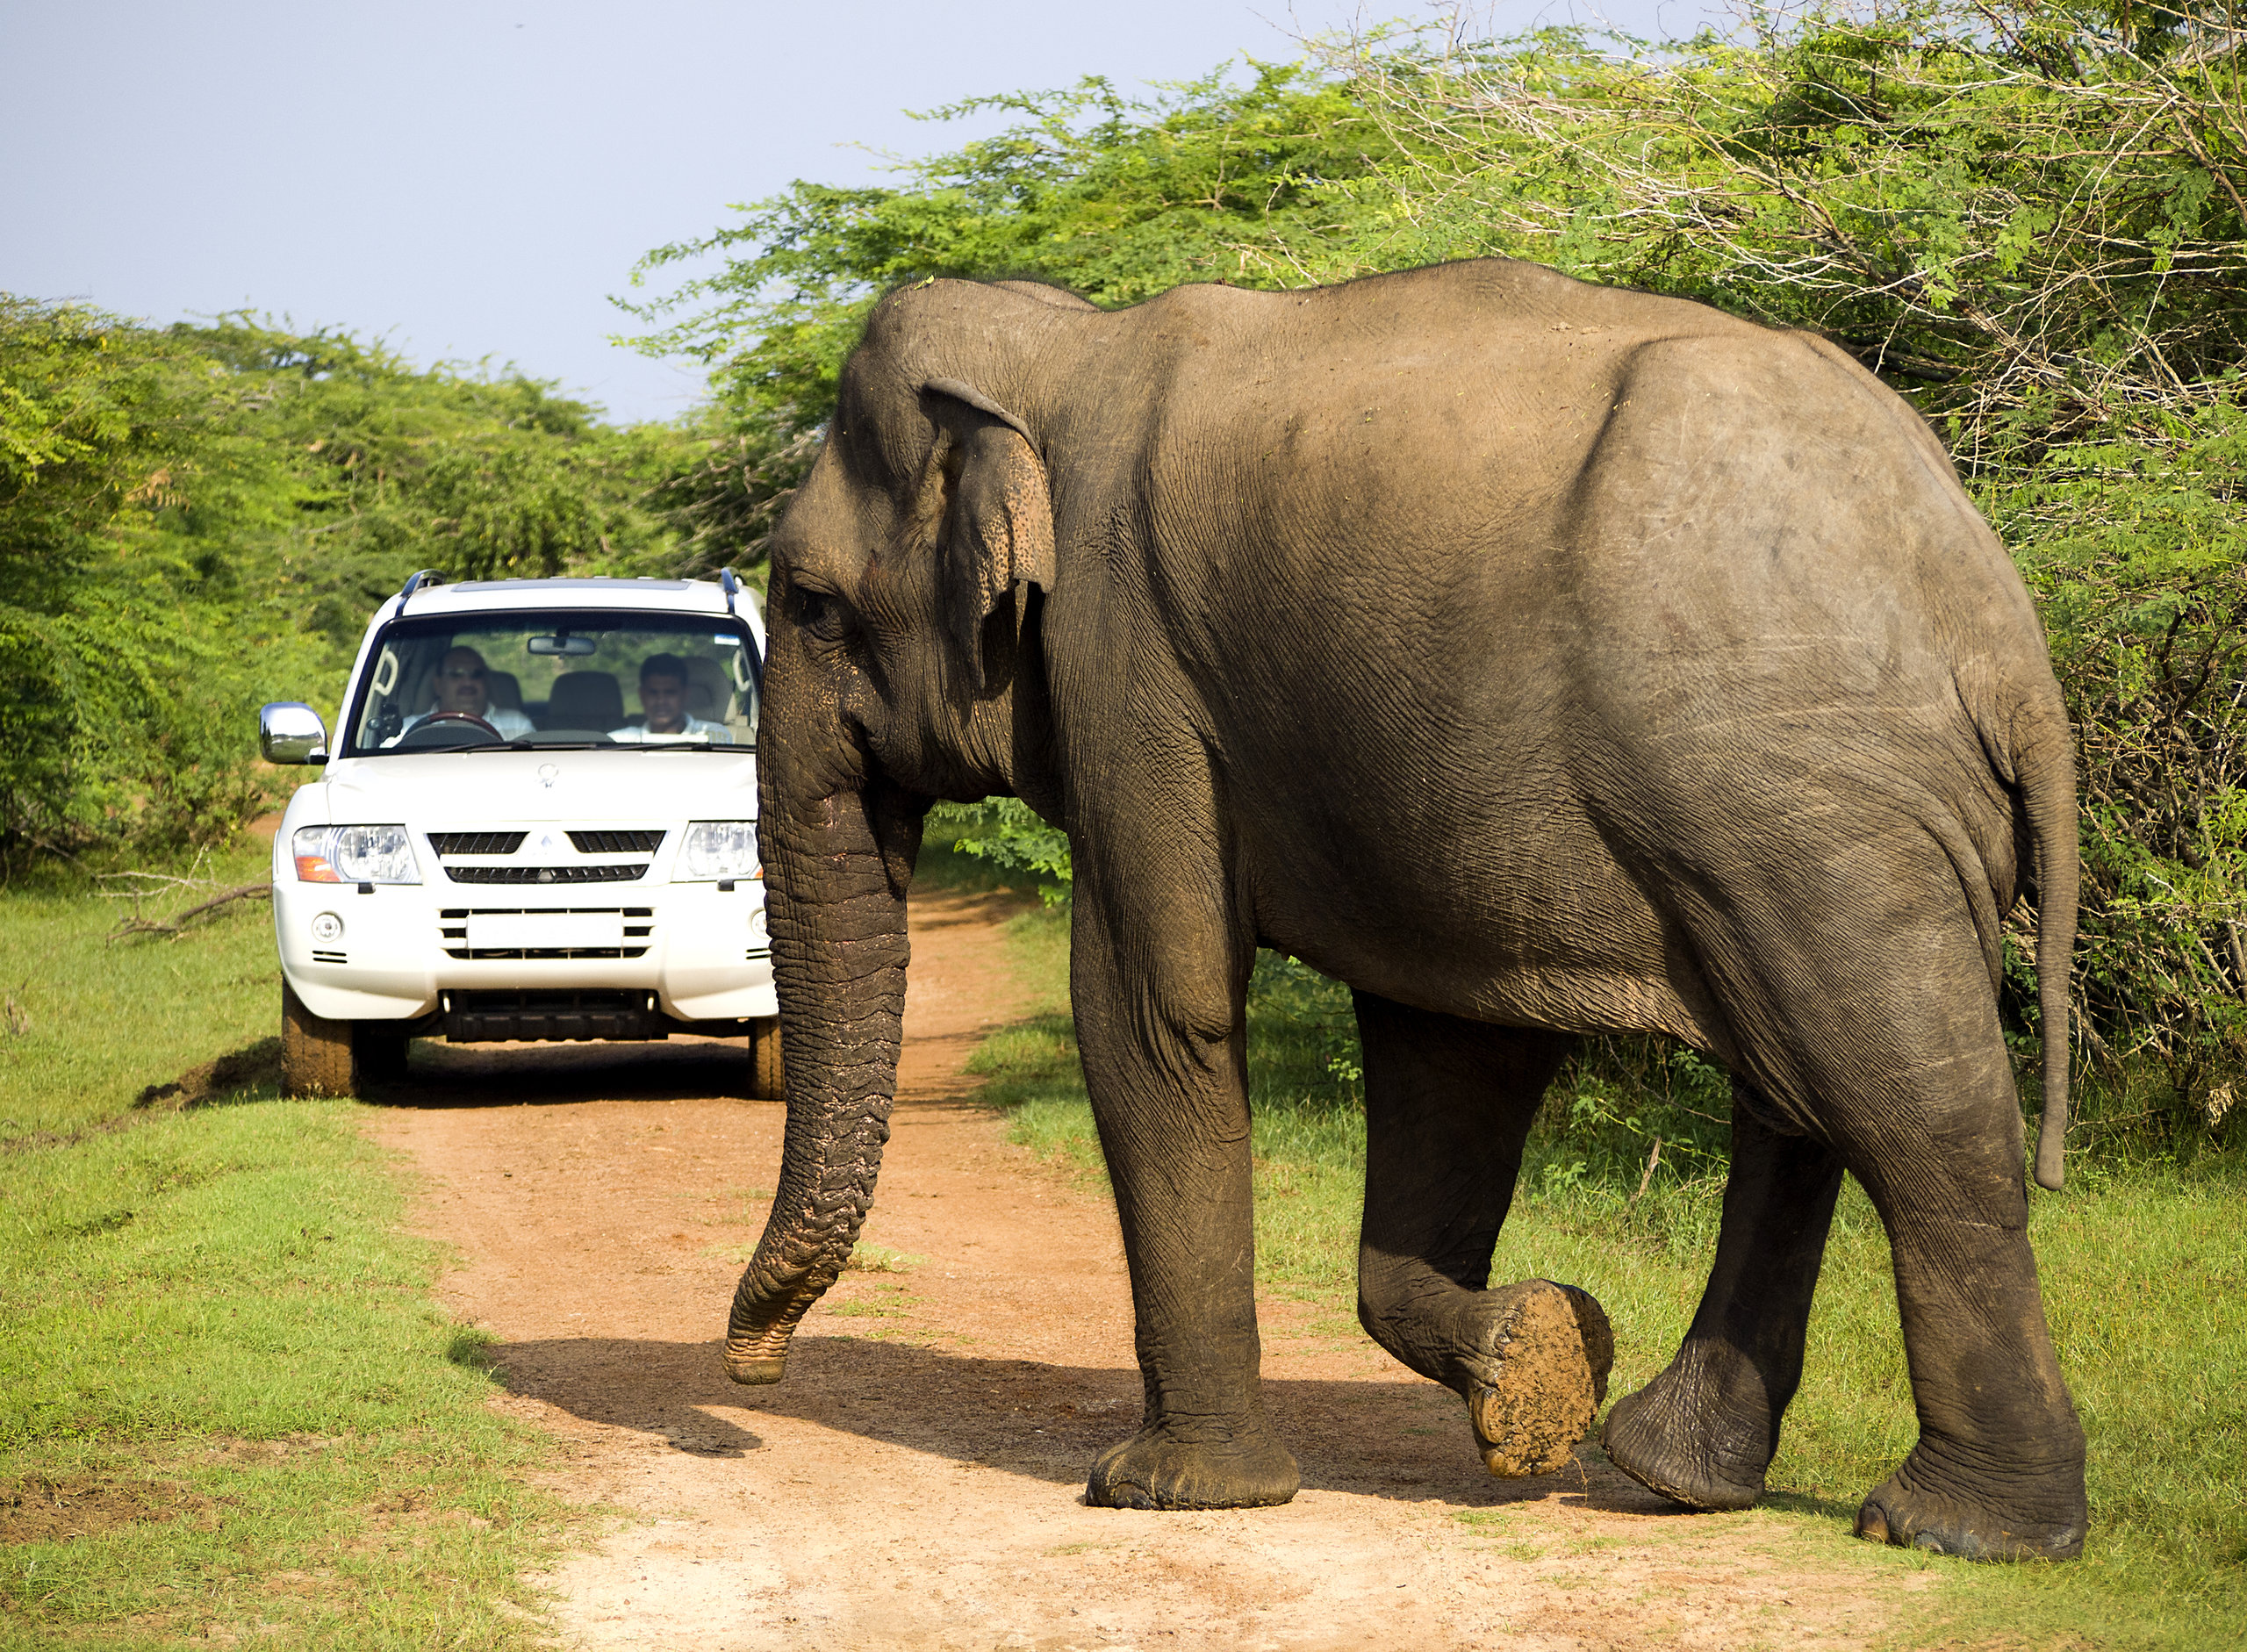 På en rejse til Sri Lanka ser du også nationalparker med elefanter